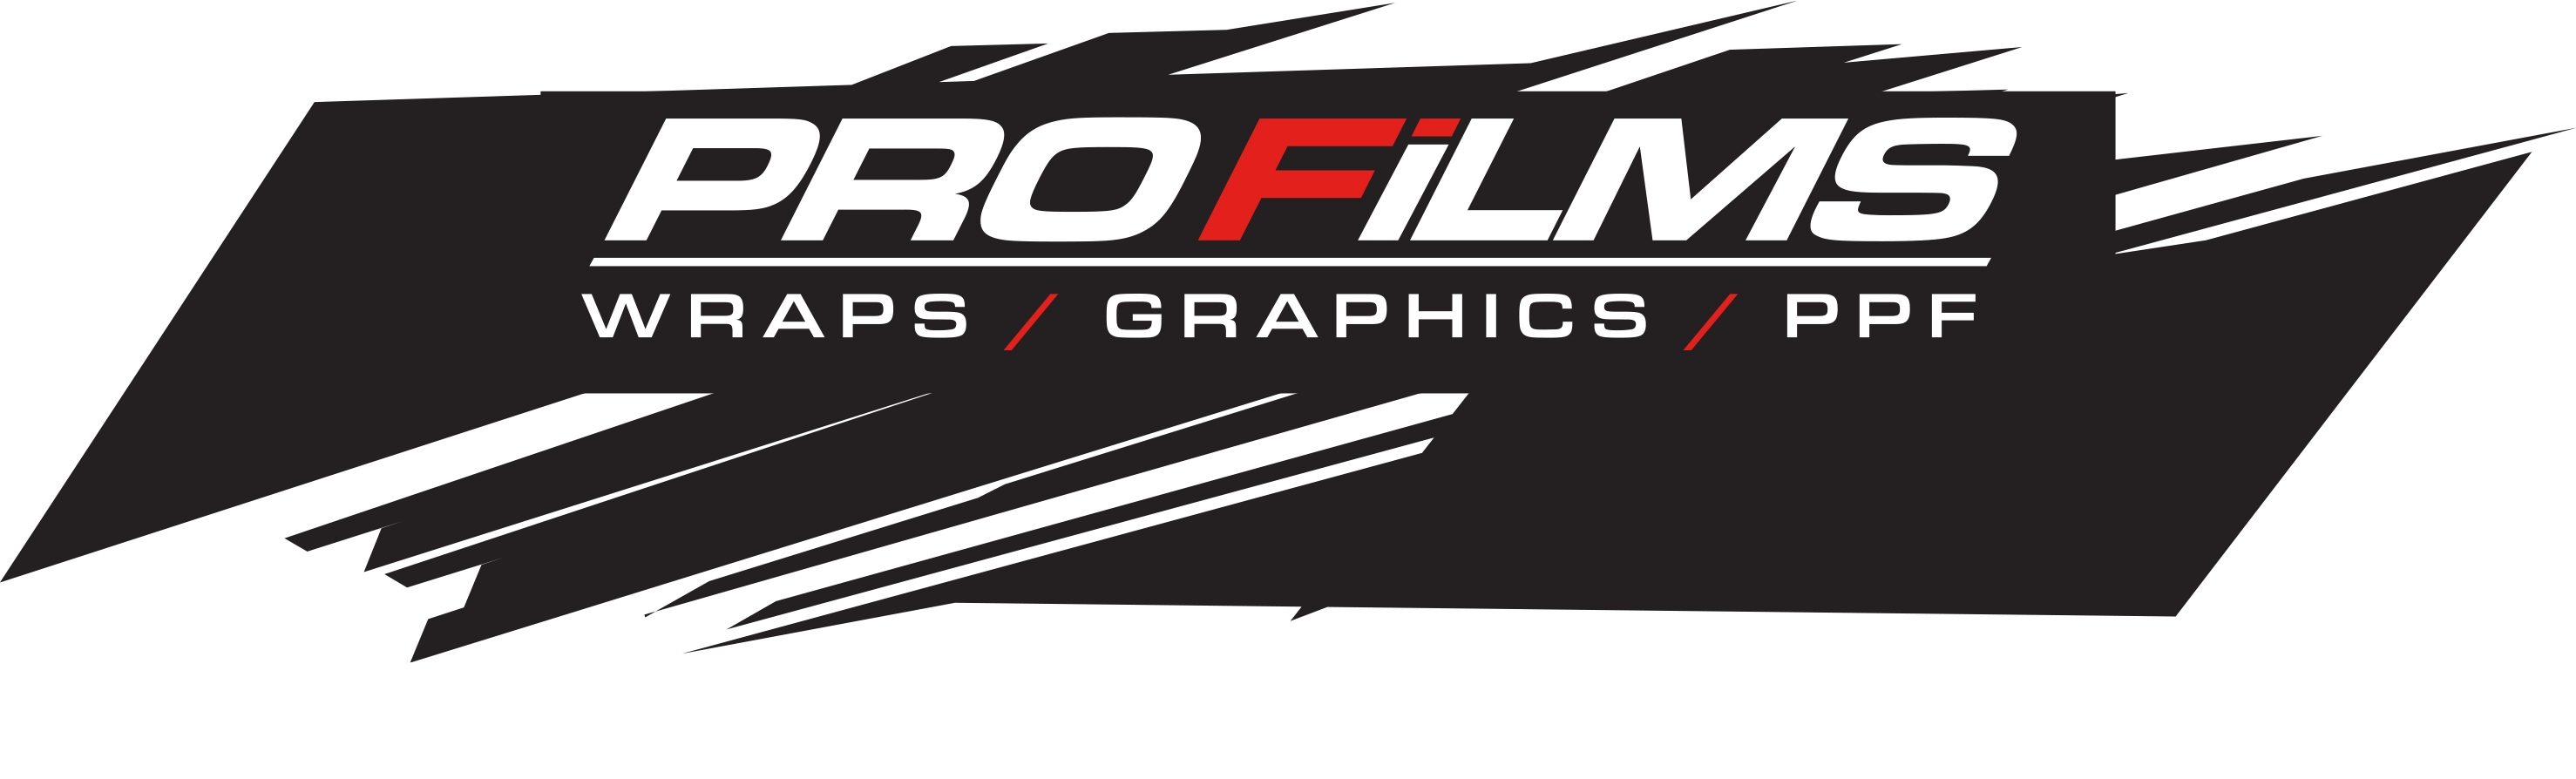 Pro Films: Wraps/Graphics/PPF